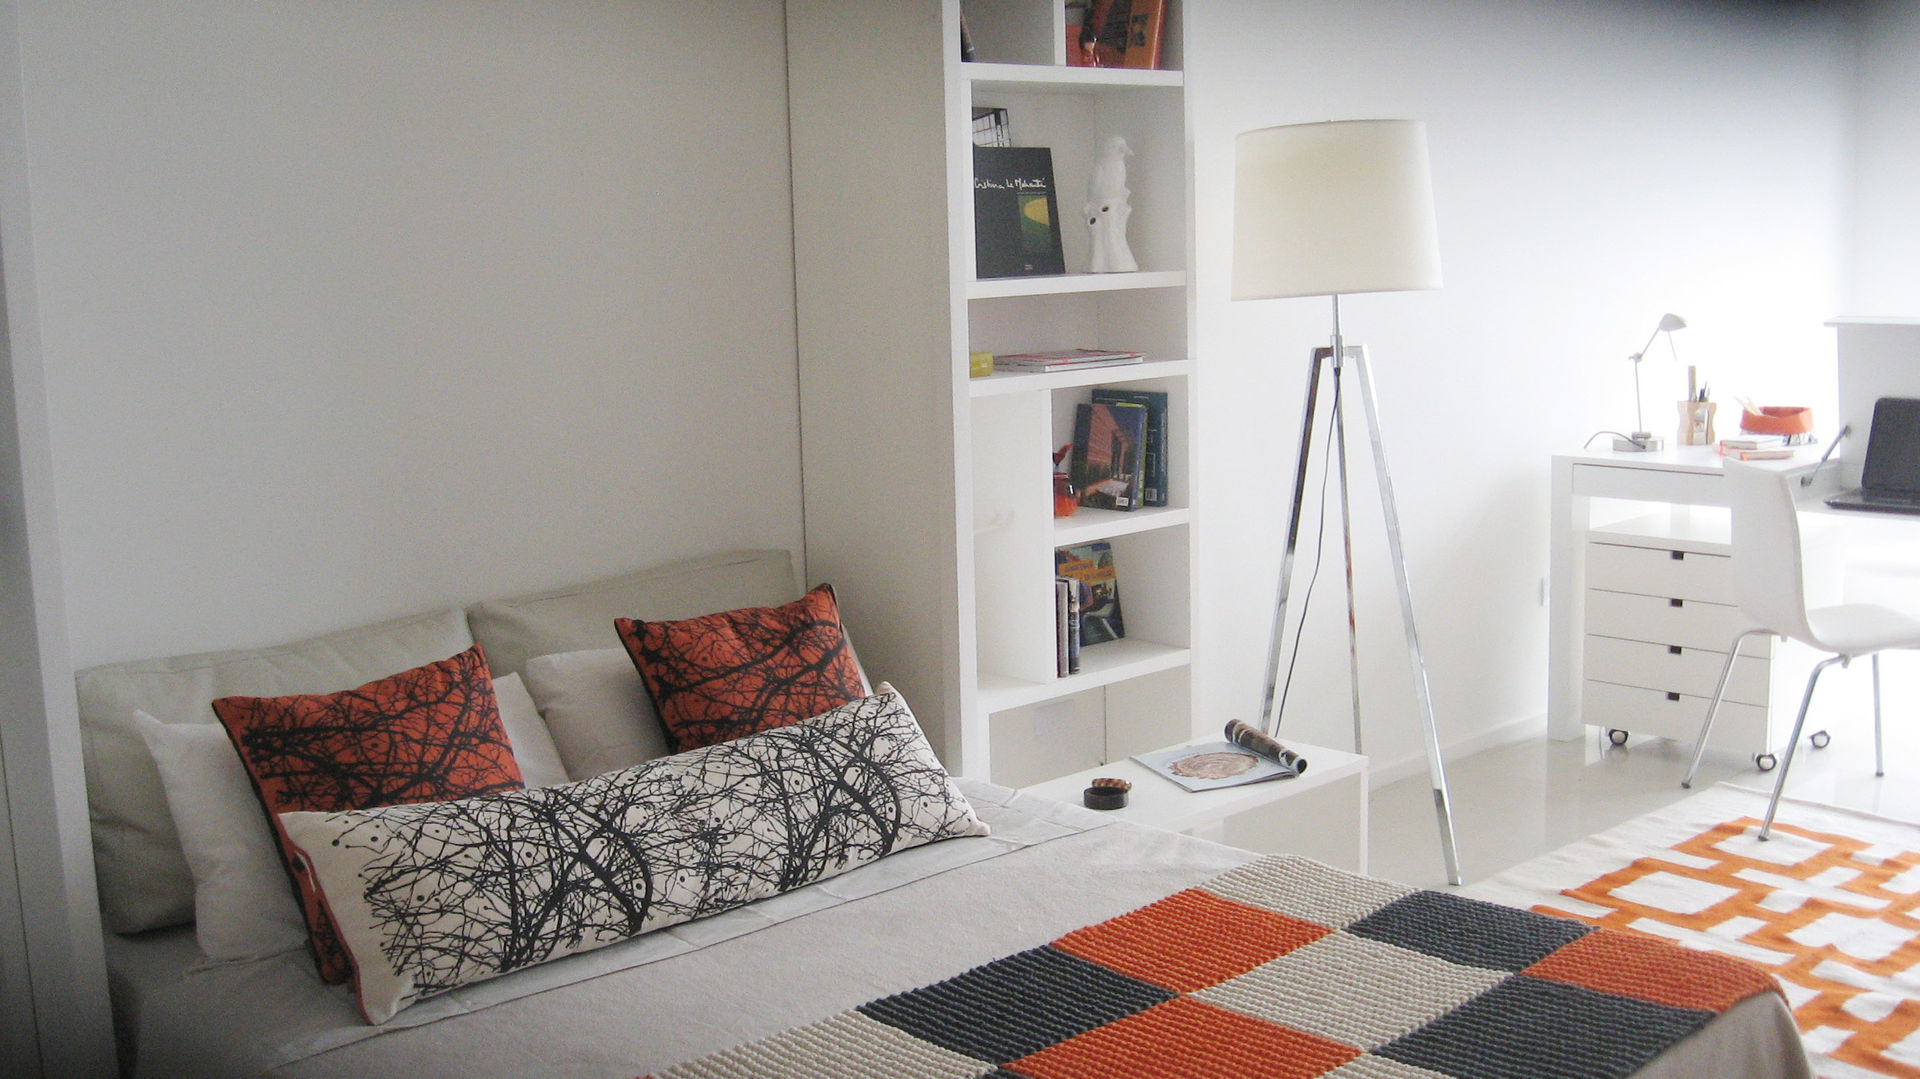 Cama rebatible + biblioteca MinBai Dormitorios de estilo minimalista Madera Blanco Camas y cabeceras